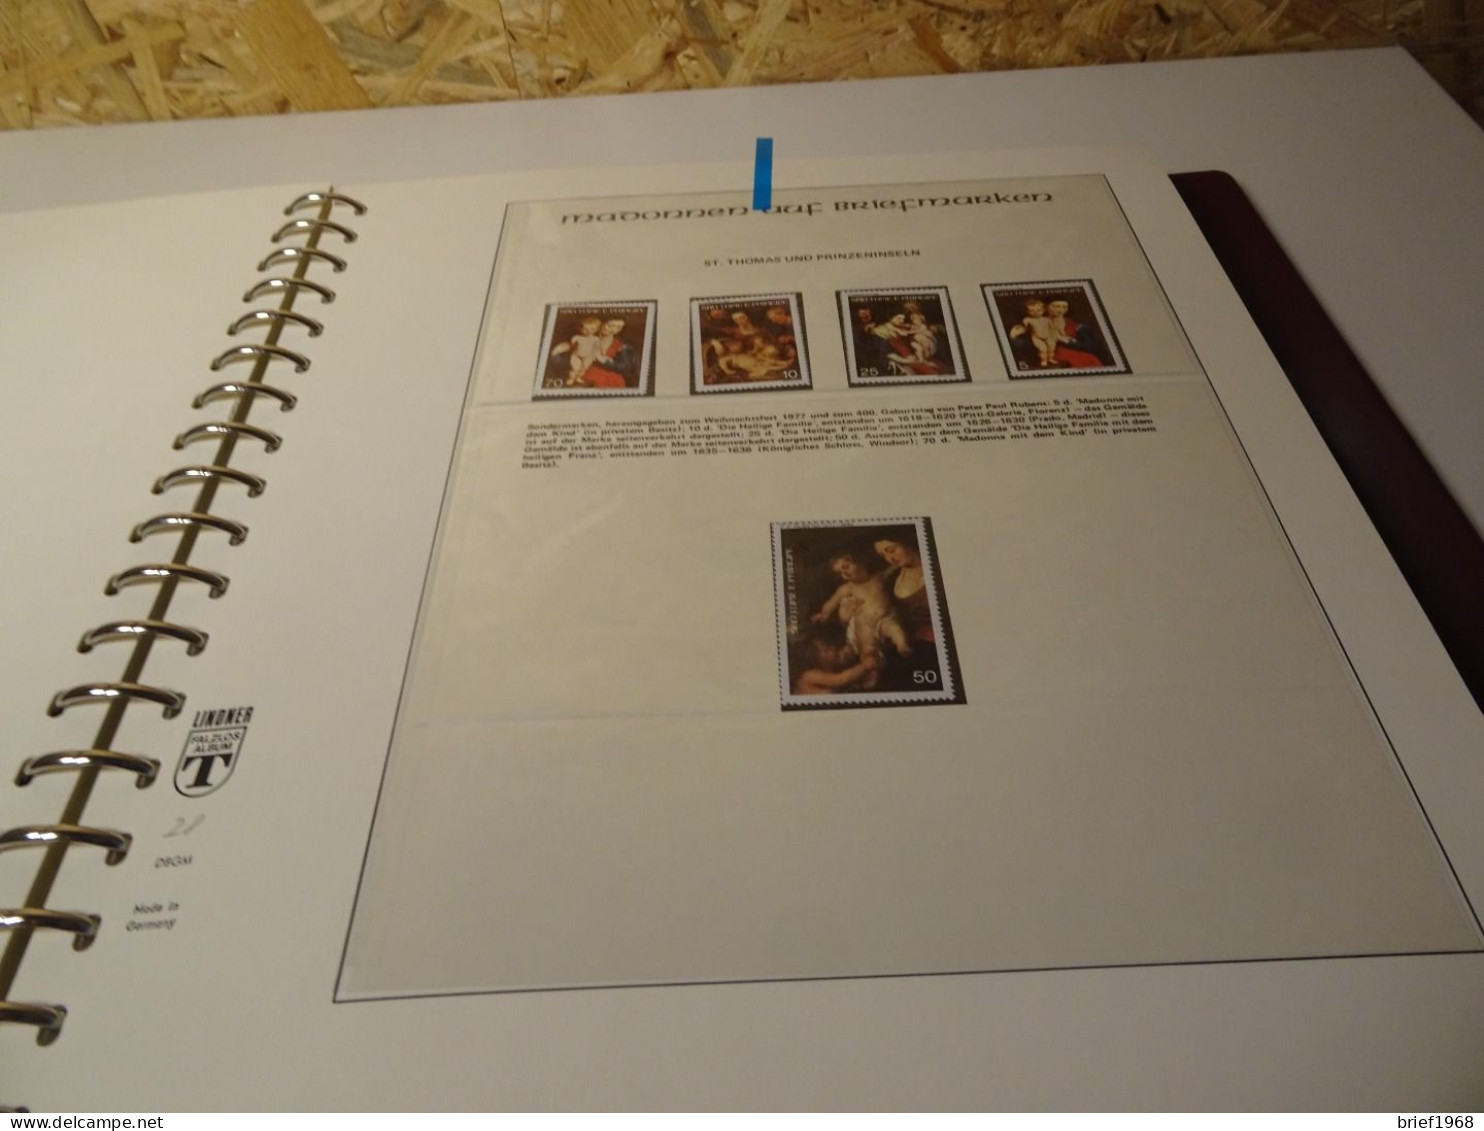 Madonnen auf Briefmarken 2 bändige Abosammlung (24791)